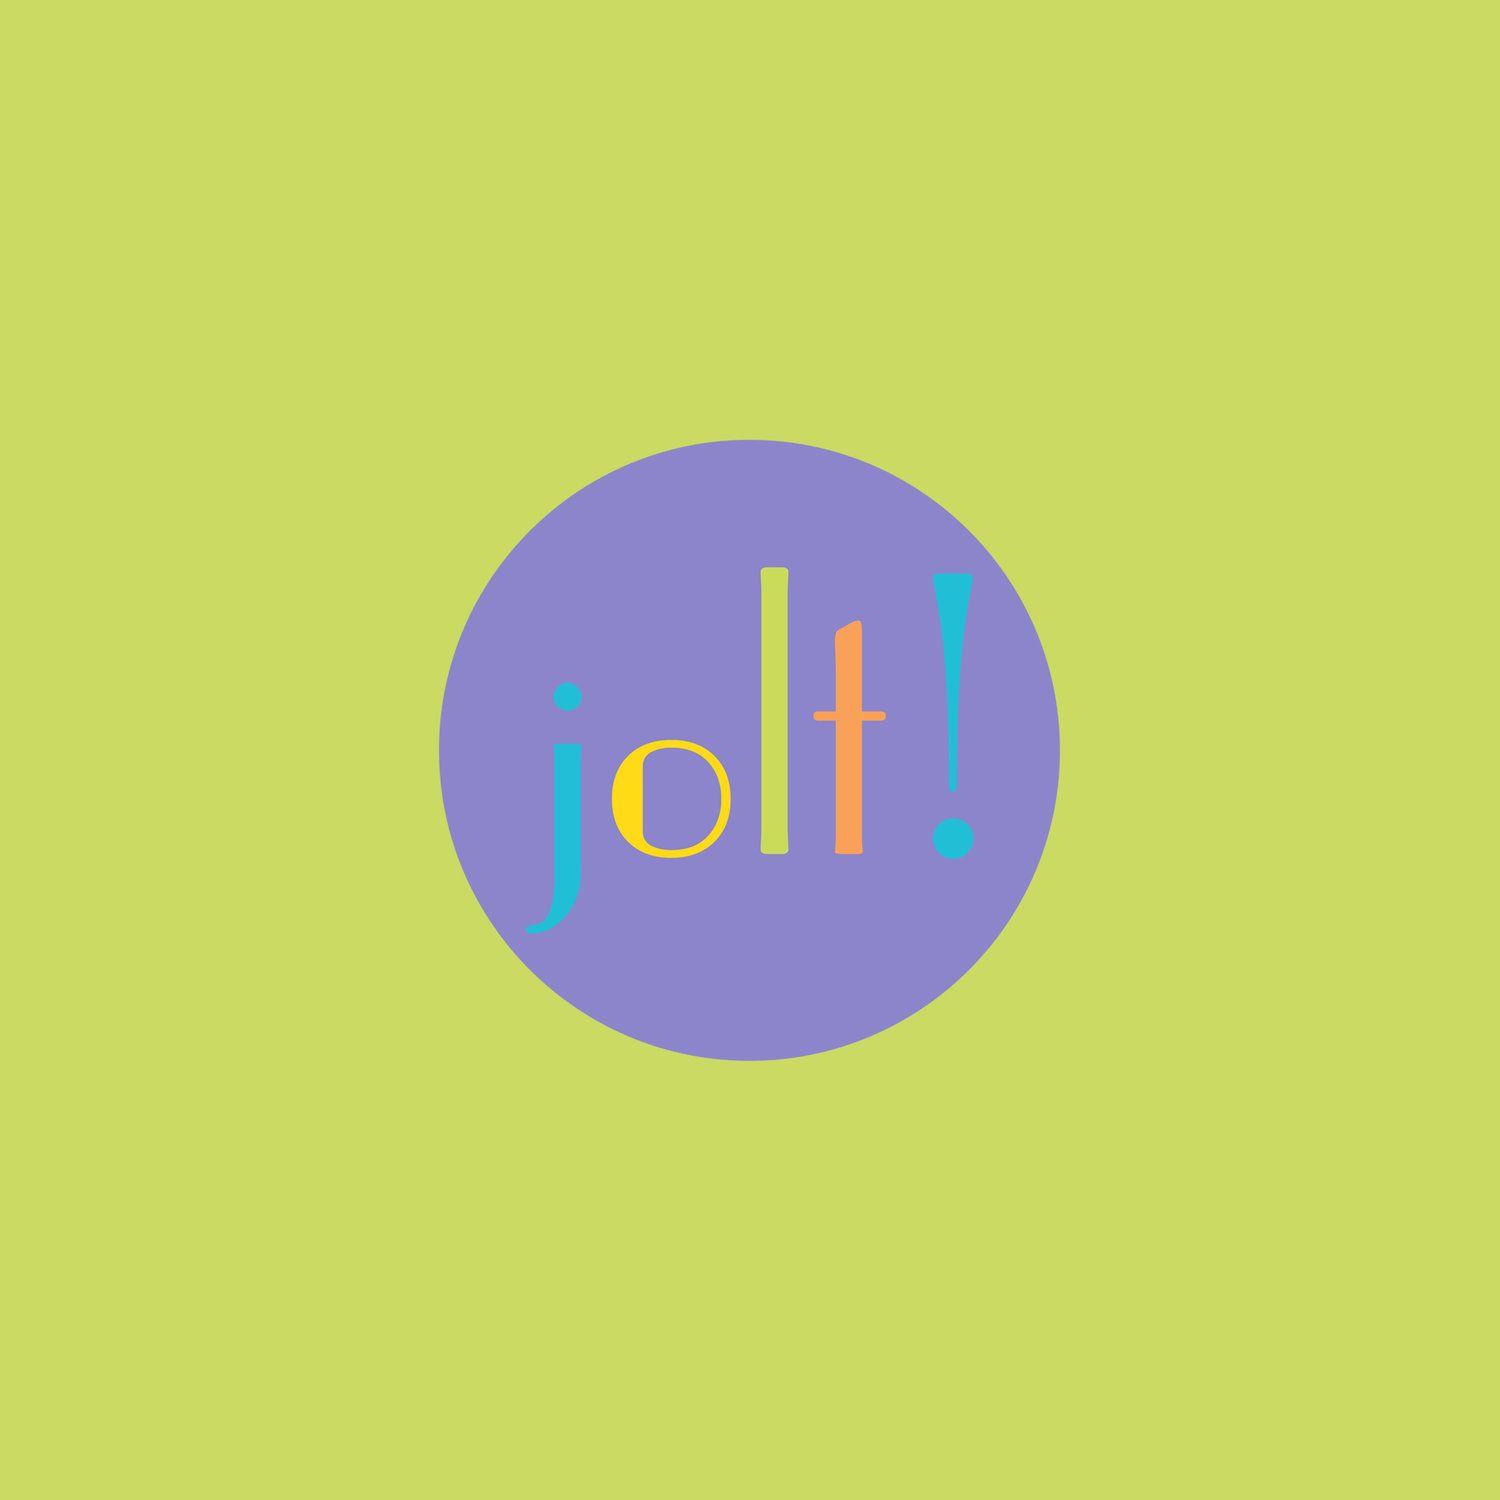 Jolt Logo - Brands